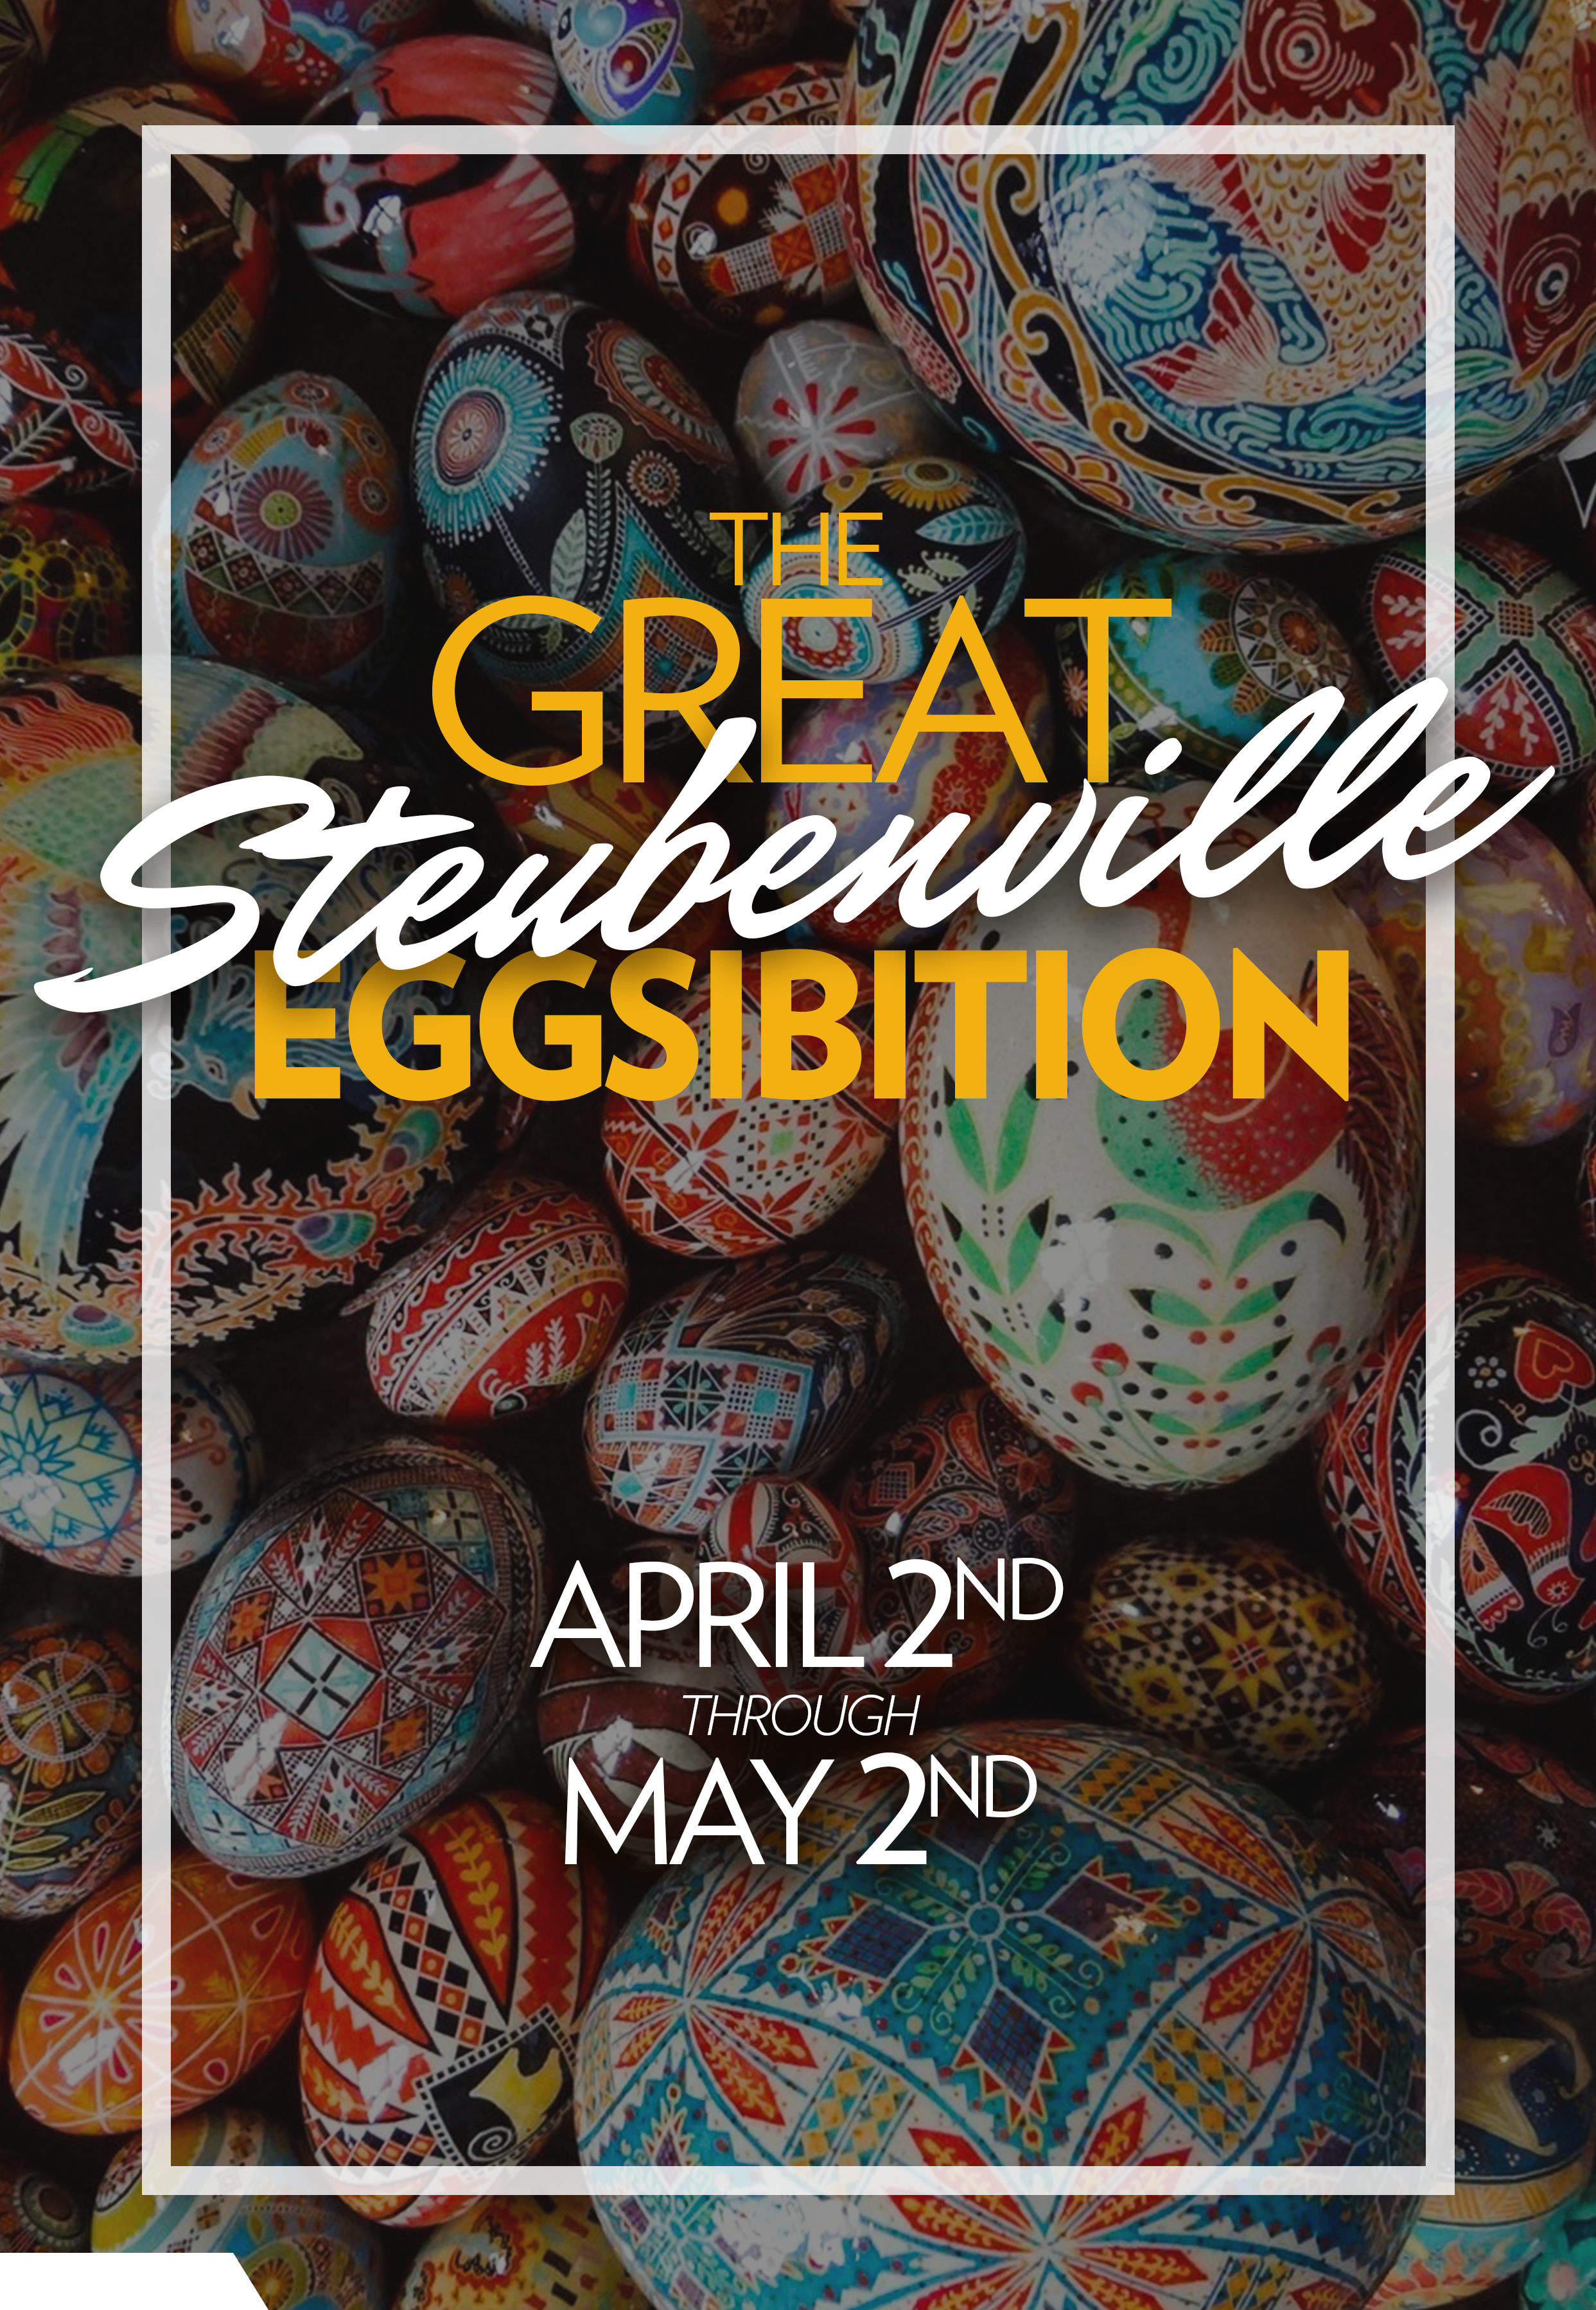  Steubenville Eggsibition Web Page